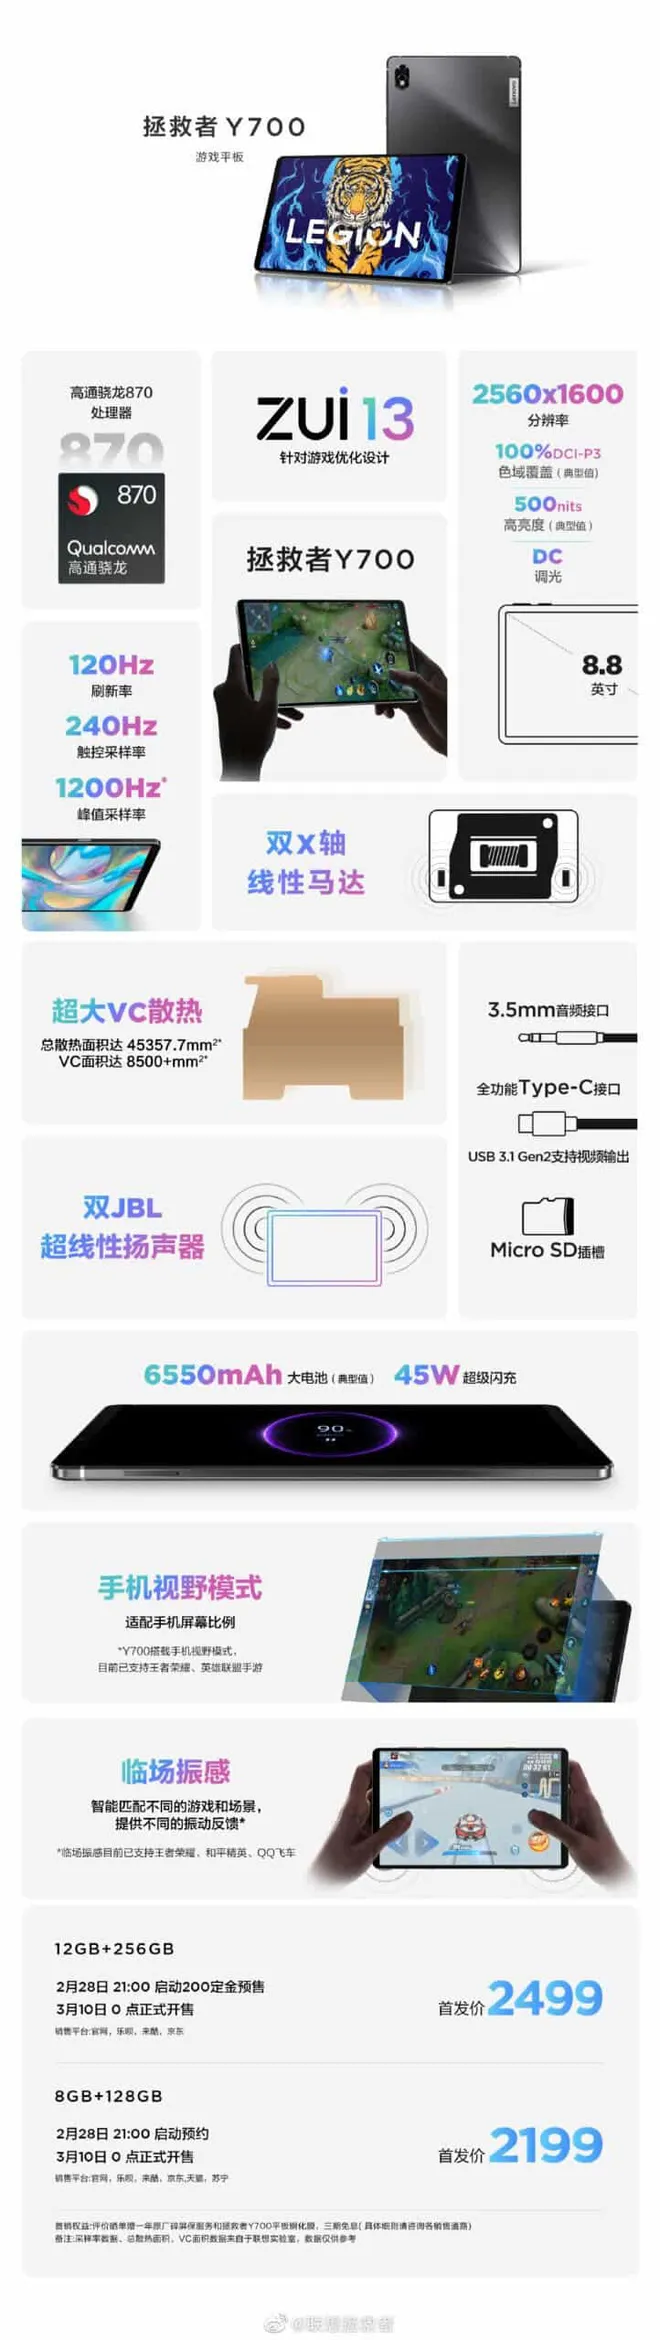 Lenovo Legion Y700 terá entregas iniciadas em 10 de março (Imagem: Weibo)